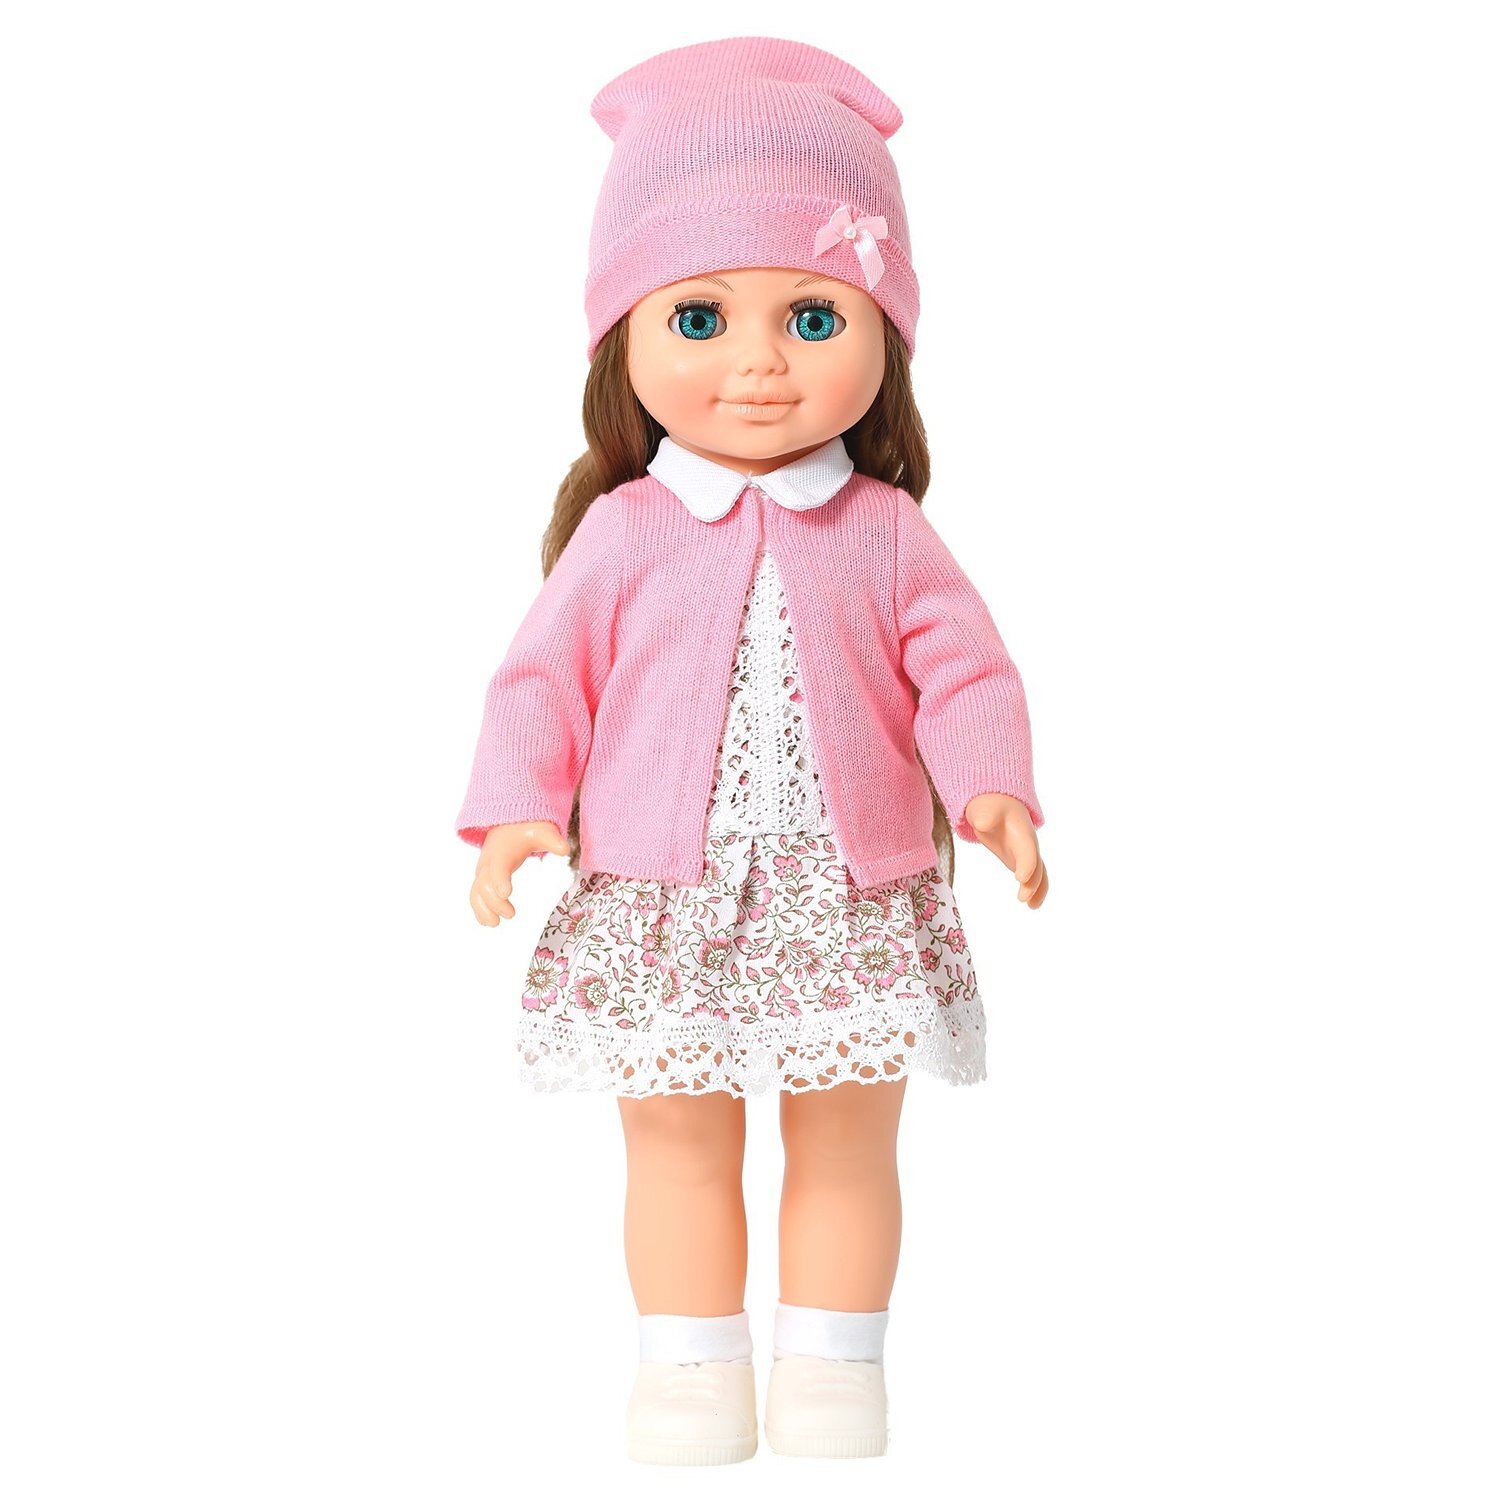 Купить куклу в новосибирске